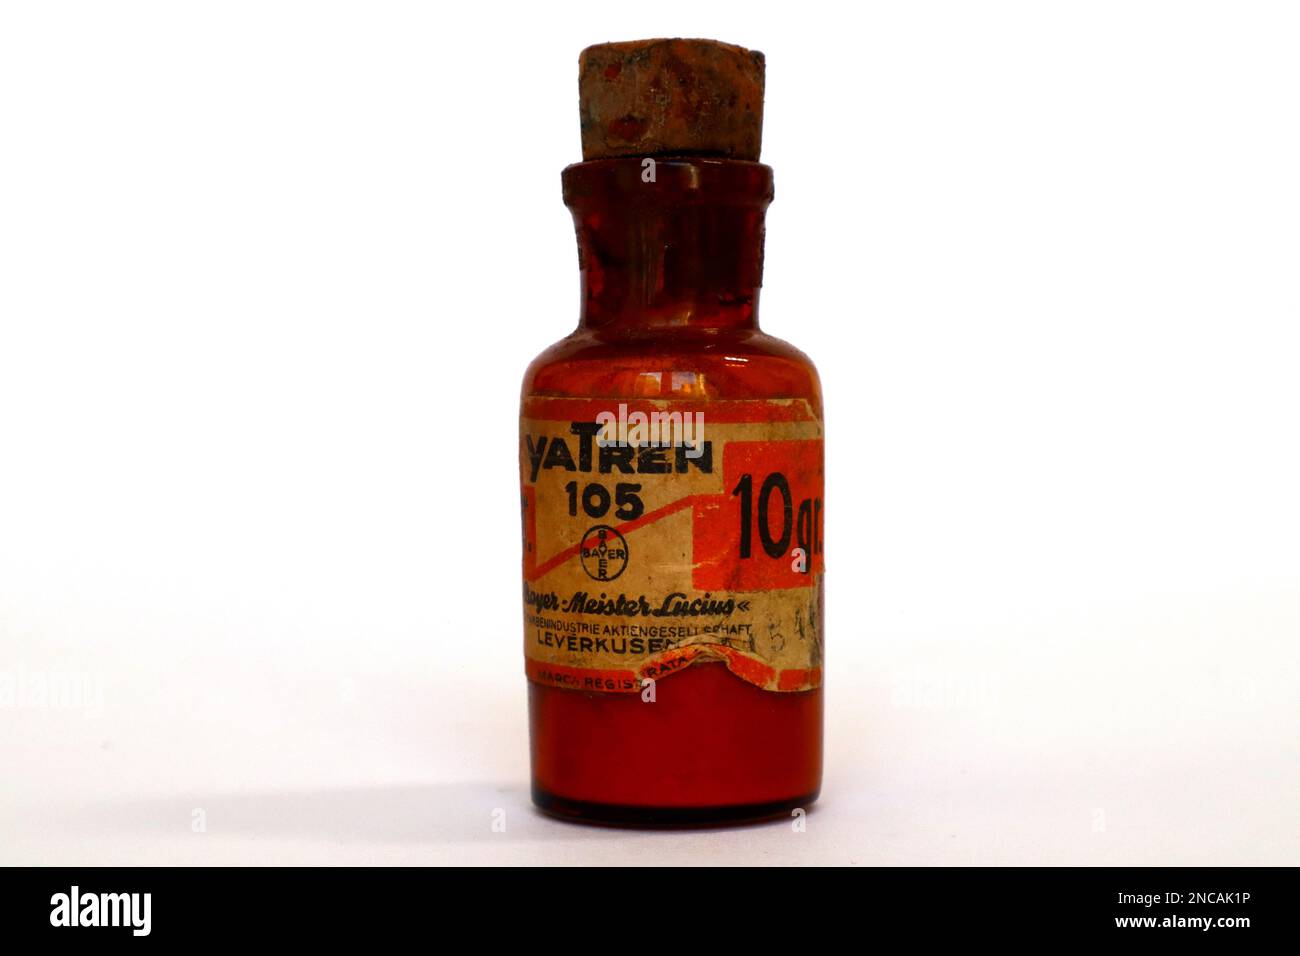 YaTren 105 Bayer Vintage 1920er Flasche Arzneimittel zur Behandlung der Amöbenruhr Stockfoto